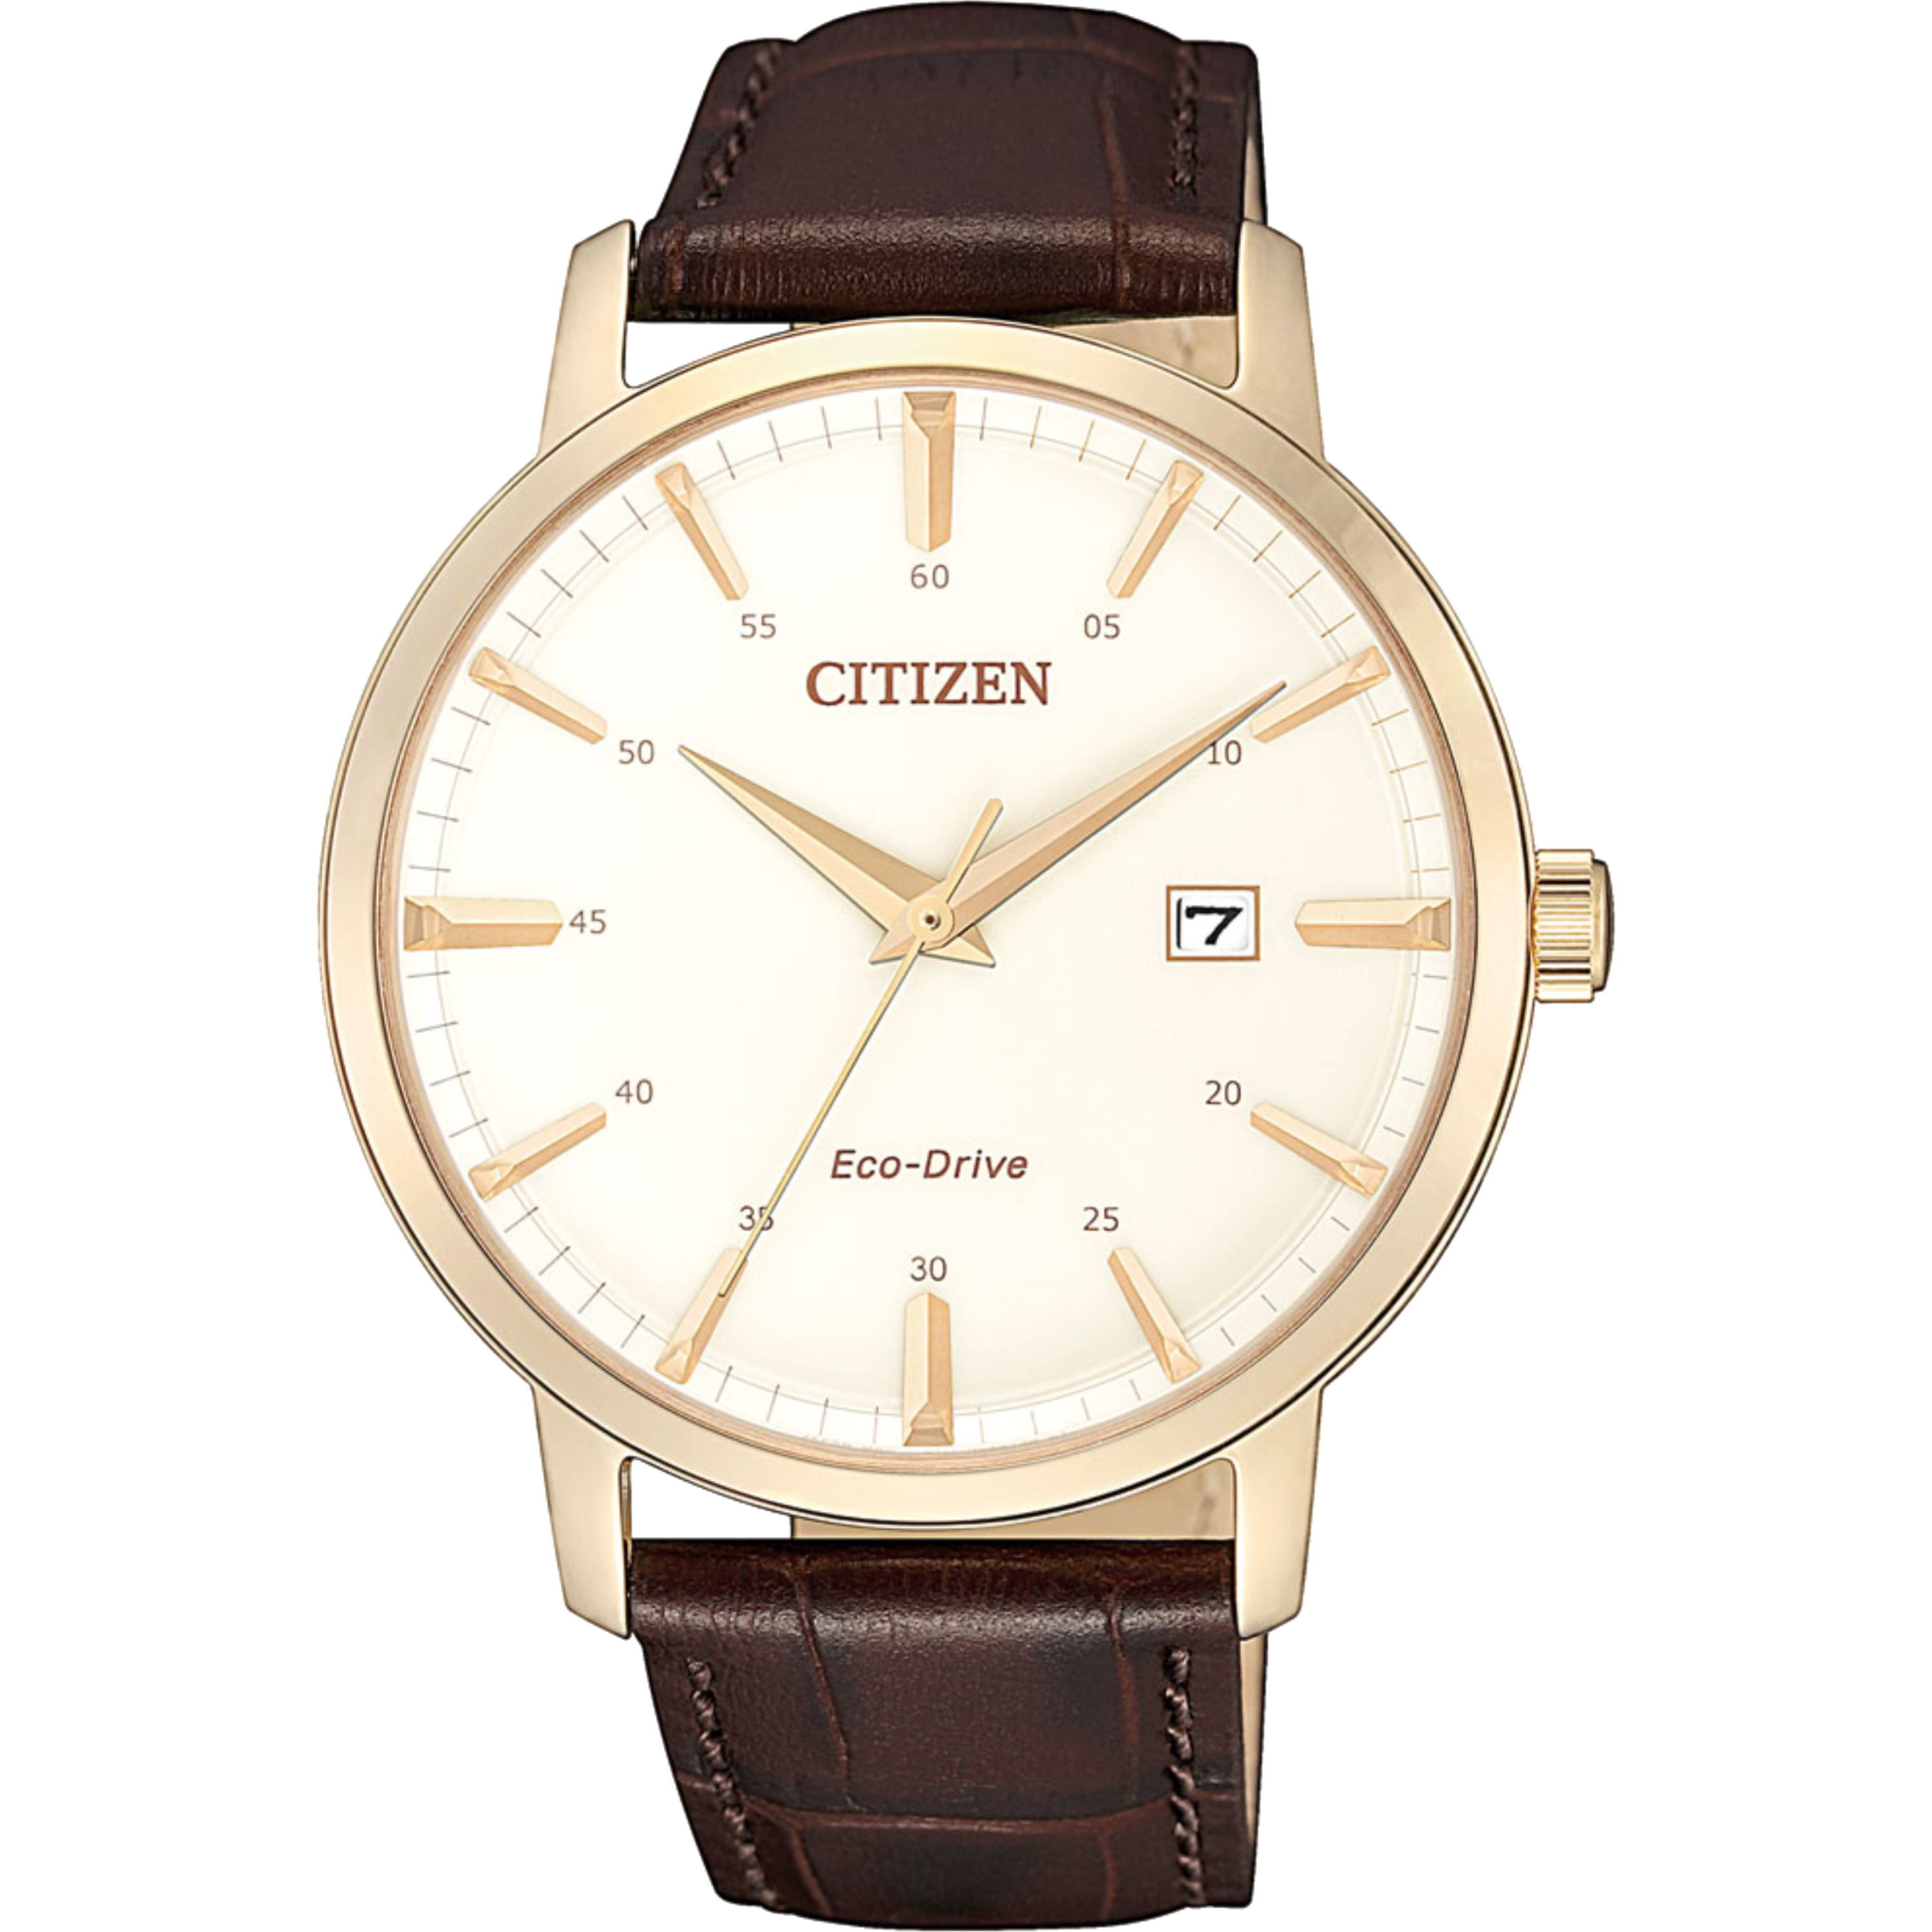 שעון יד לגבר מנגנון אקו דרייב Citizen BM7463-12A 40mm - צבע רוז גולד/עור חום אחריות לשנתיים